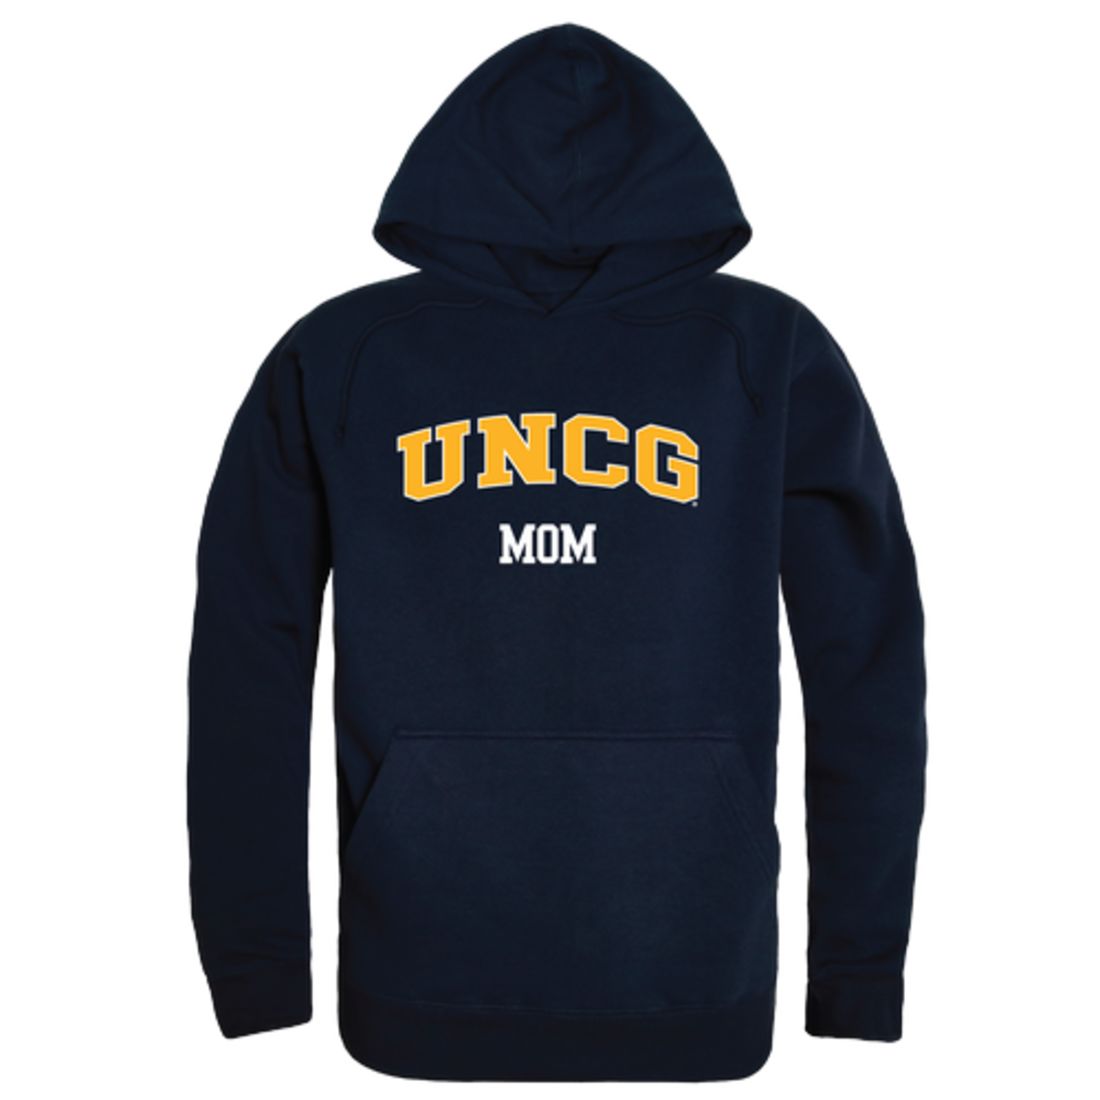 UNCG University of North Carolina at Greensboro Spartans Mom Fleece Hoodie Sweatshirts Heather Grey-Campus-Wardrobe